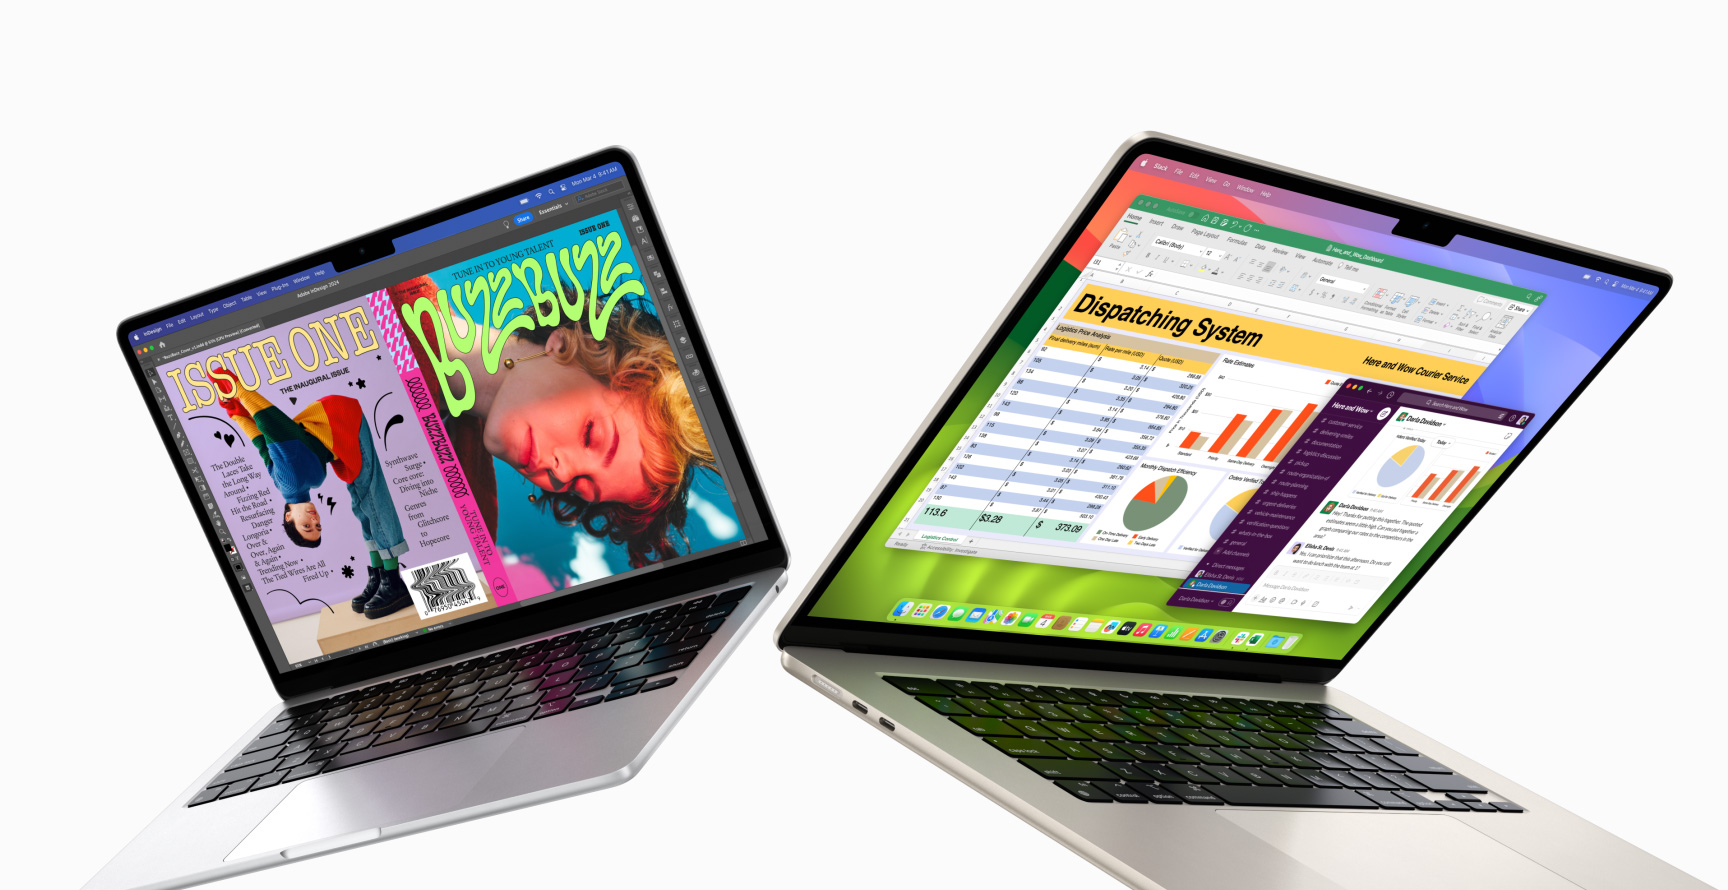 Egy részben kinyitott 13 hüvelykes MacBook Air látható a bal oldalon, míg egy 15 hüvelykes MacBook Air a jobb oldalon. A 13 hüvelykes kijelzőn egy InDesignban készült magazin címlapja látszik, a 15 hüvelykes kijelzőn pedig a Microsoft Excel és a Slack fut.